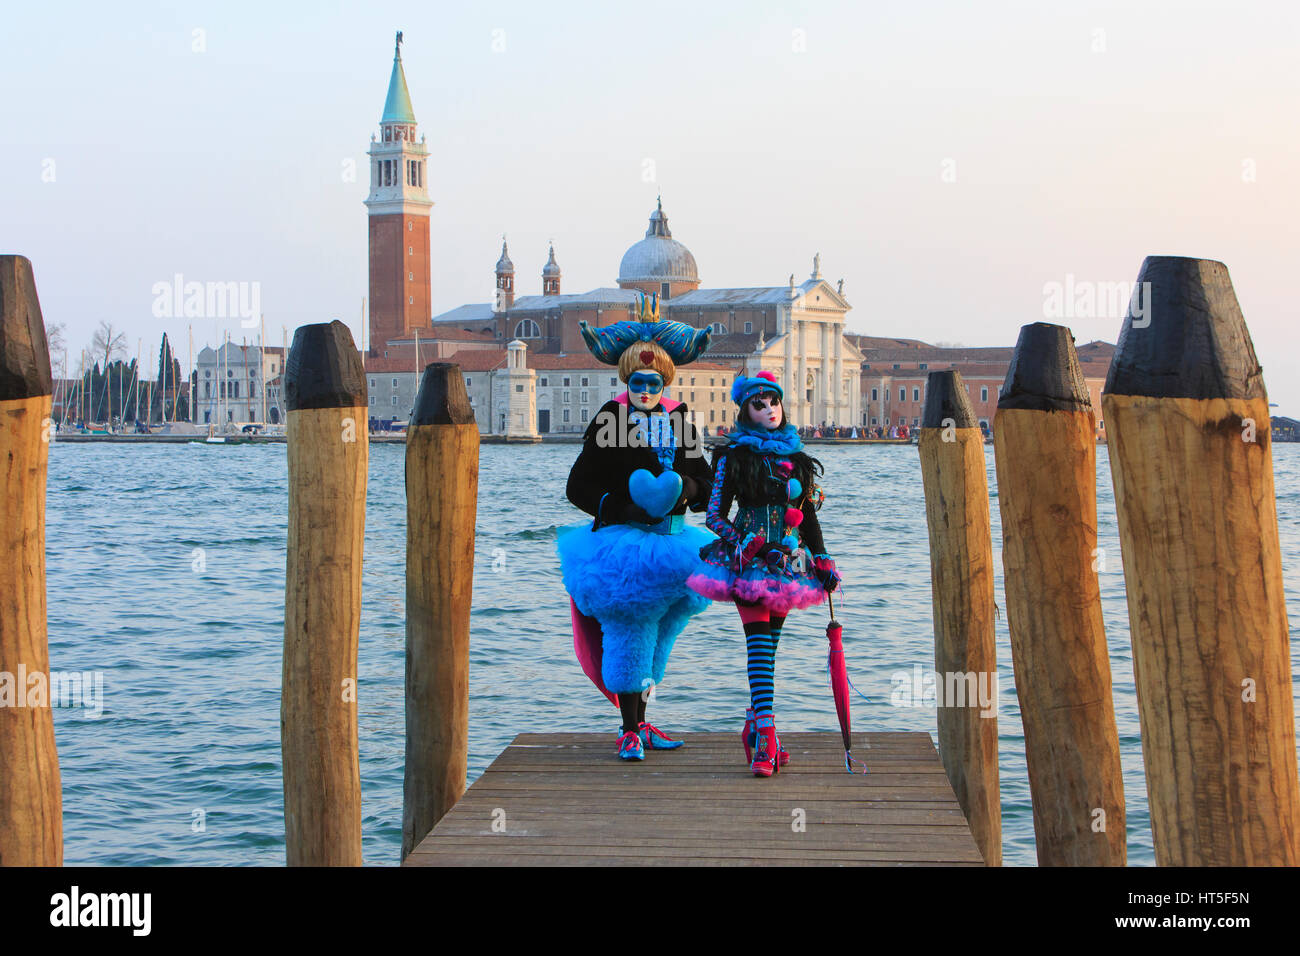 Zwei Menschen in Kostümen auf einem Boot Landung außerhalb San Giorgio Maggiore während der Karneval von Venedig, Italien Stockfoto